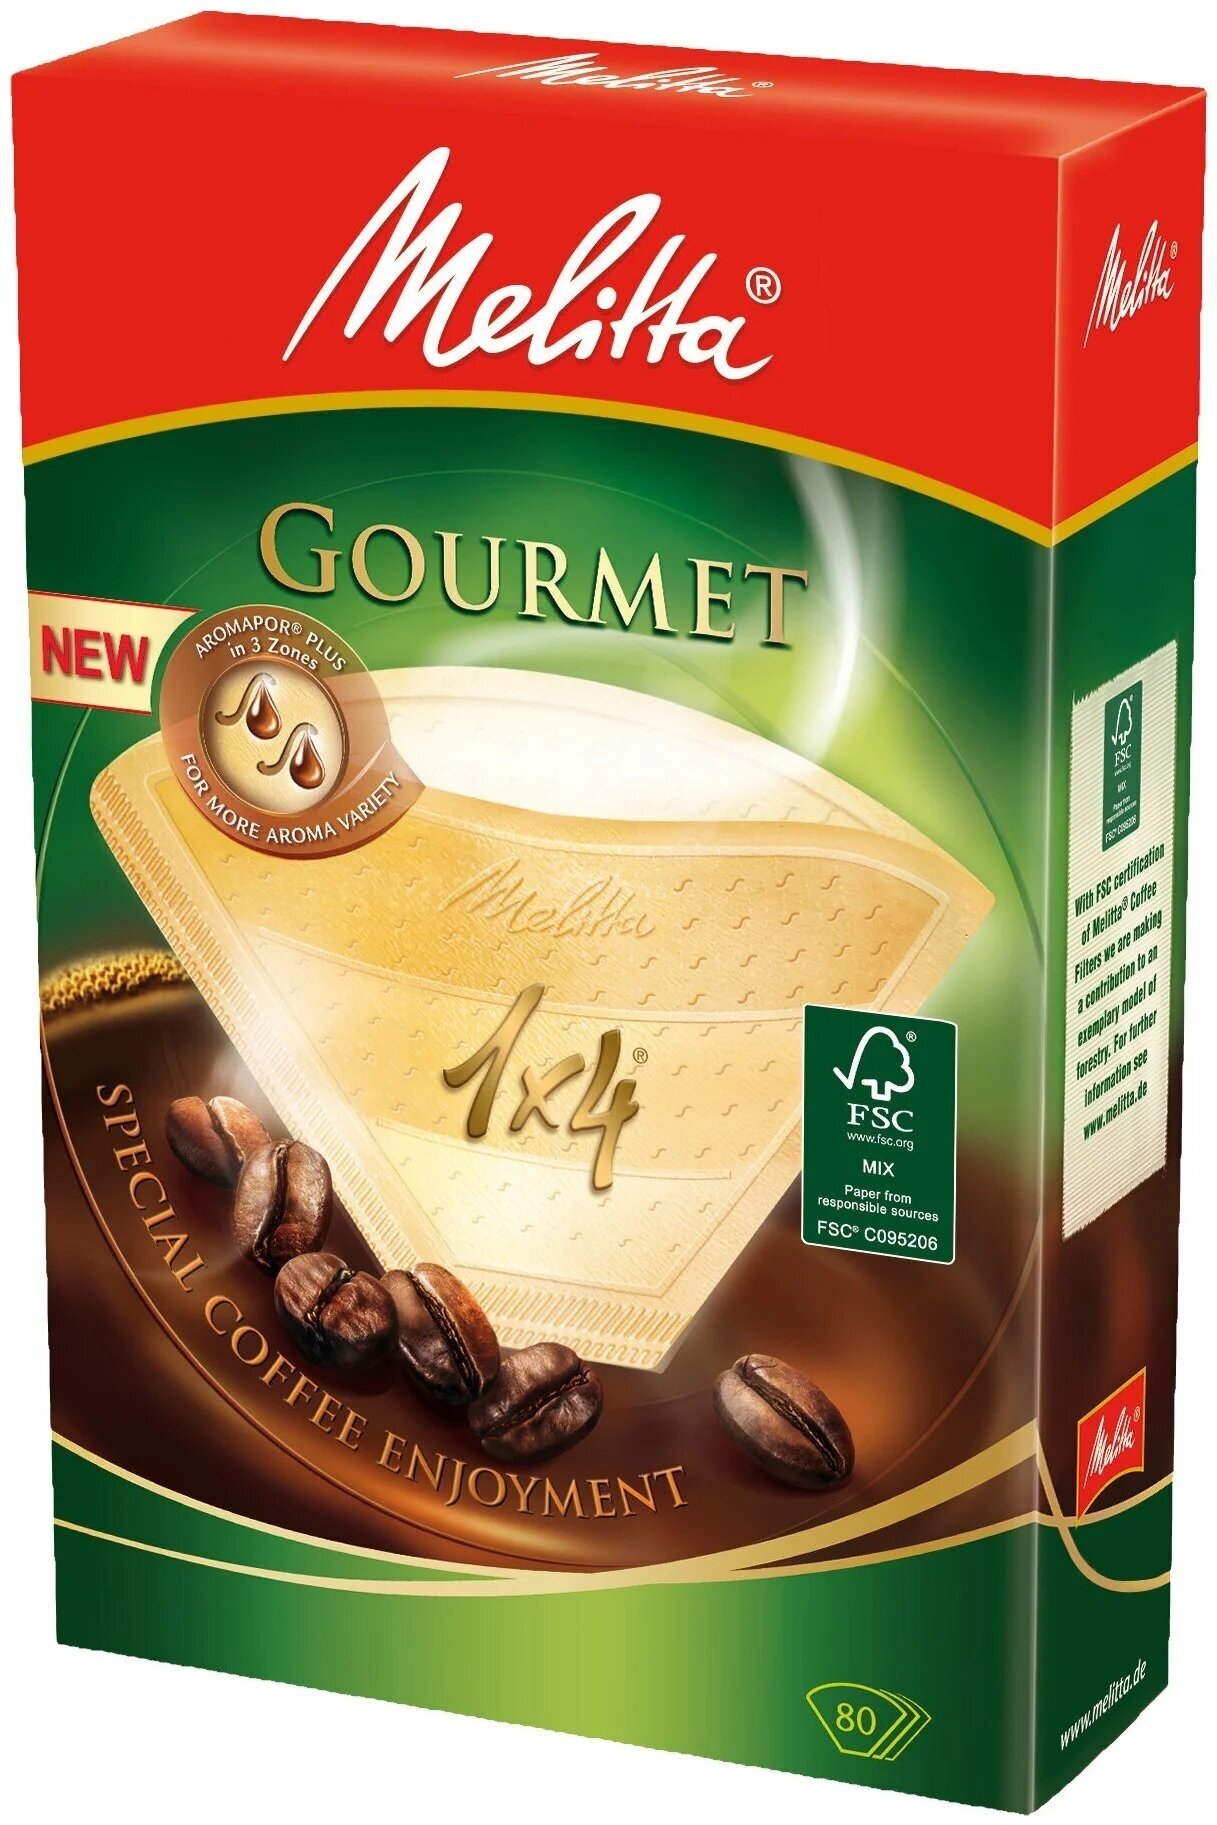 Одноразовые фильтры для капельной кофеварки Melitta Gourmet коричневые Размер 1х4